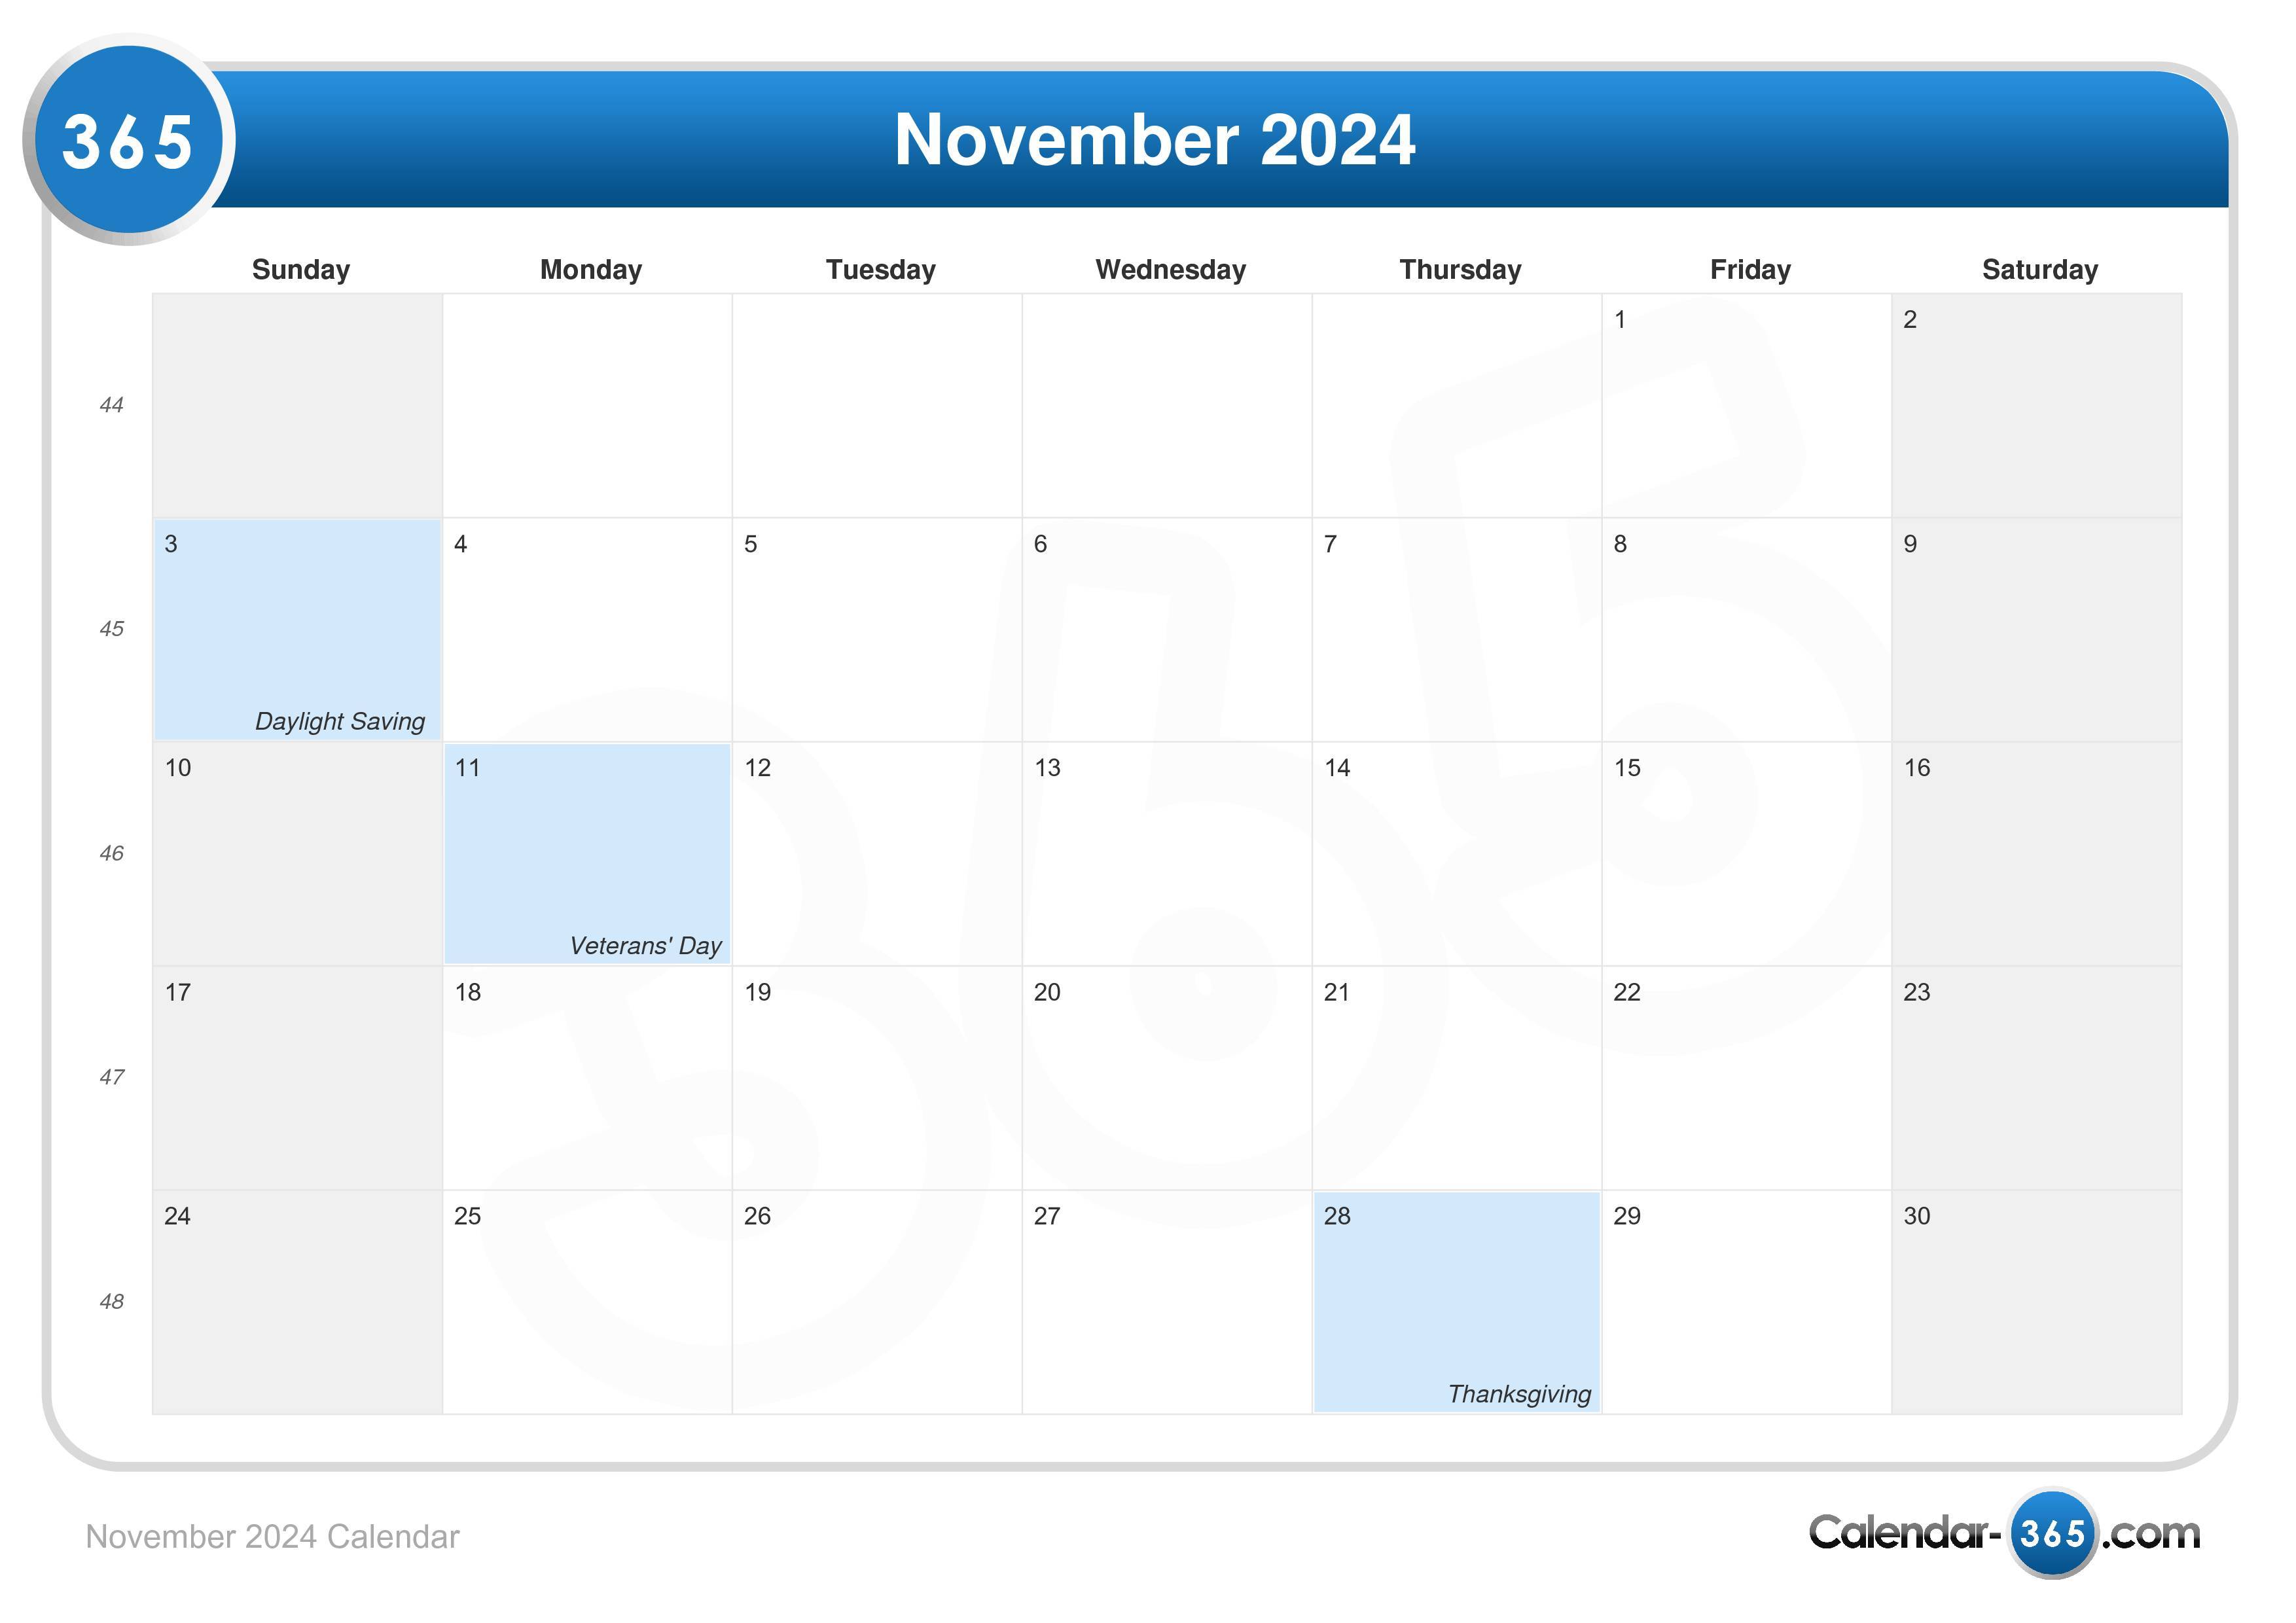 Thanksgiving 2024 - Nov 28, 2024